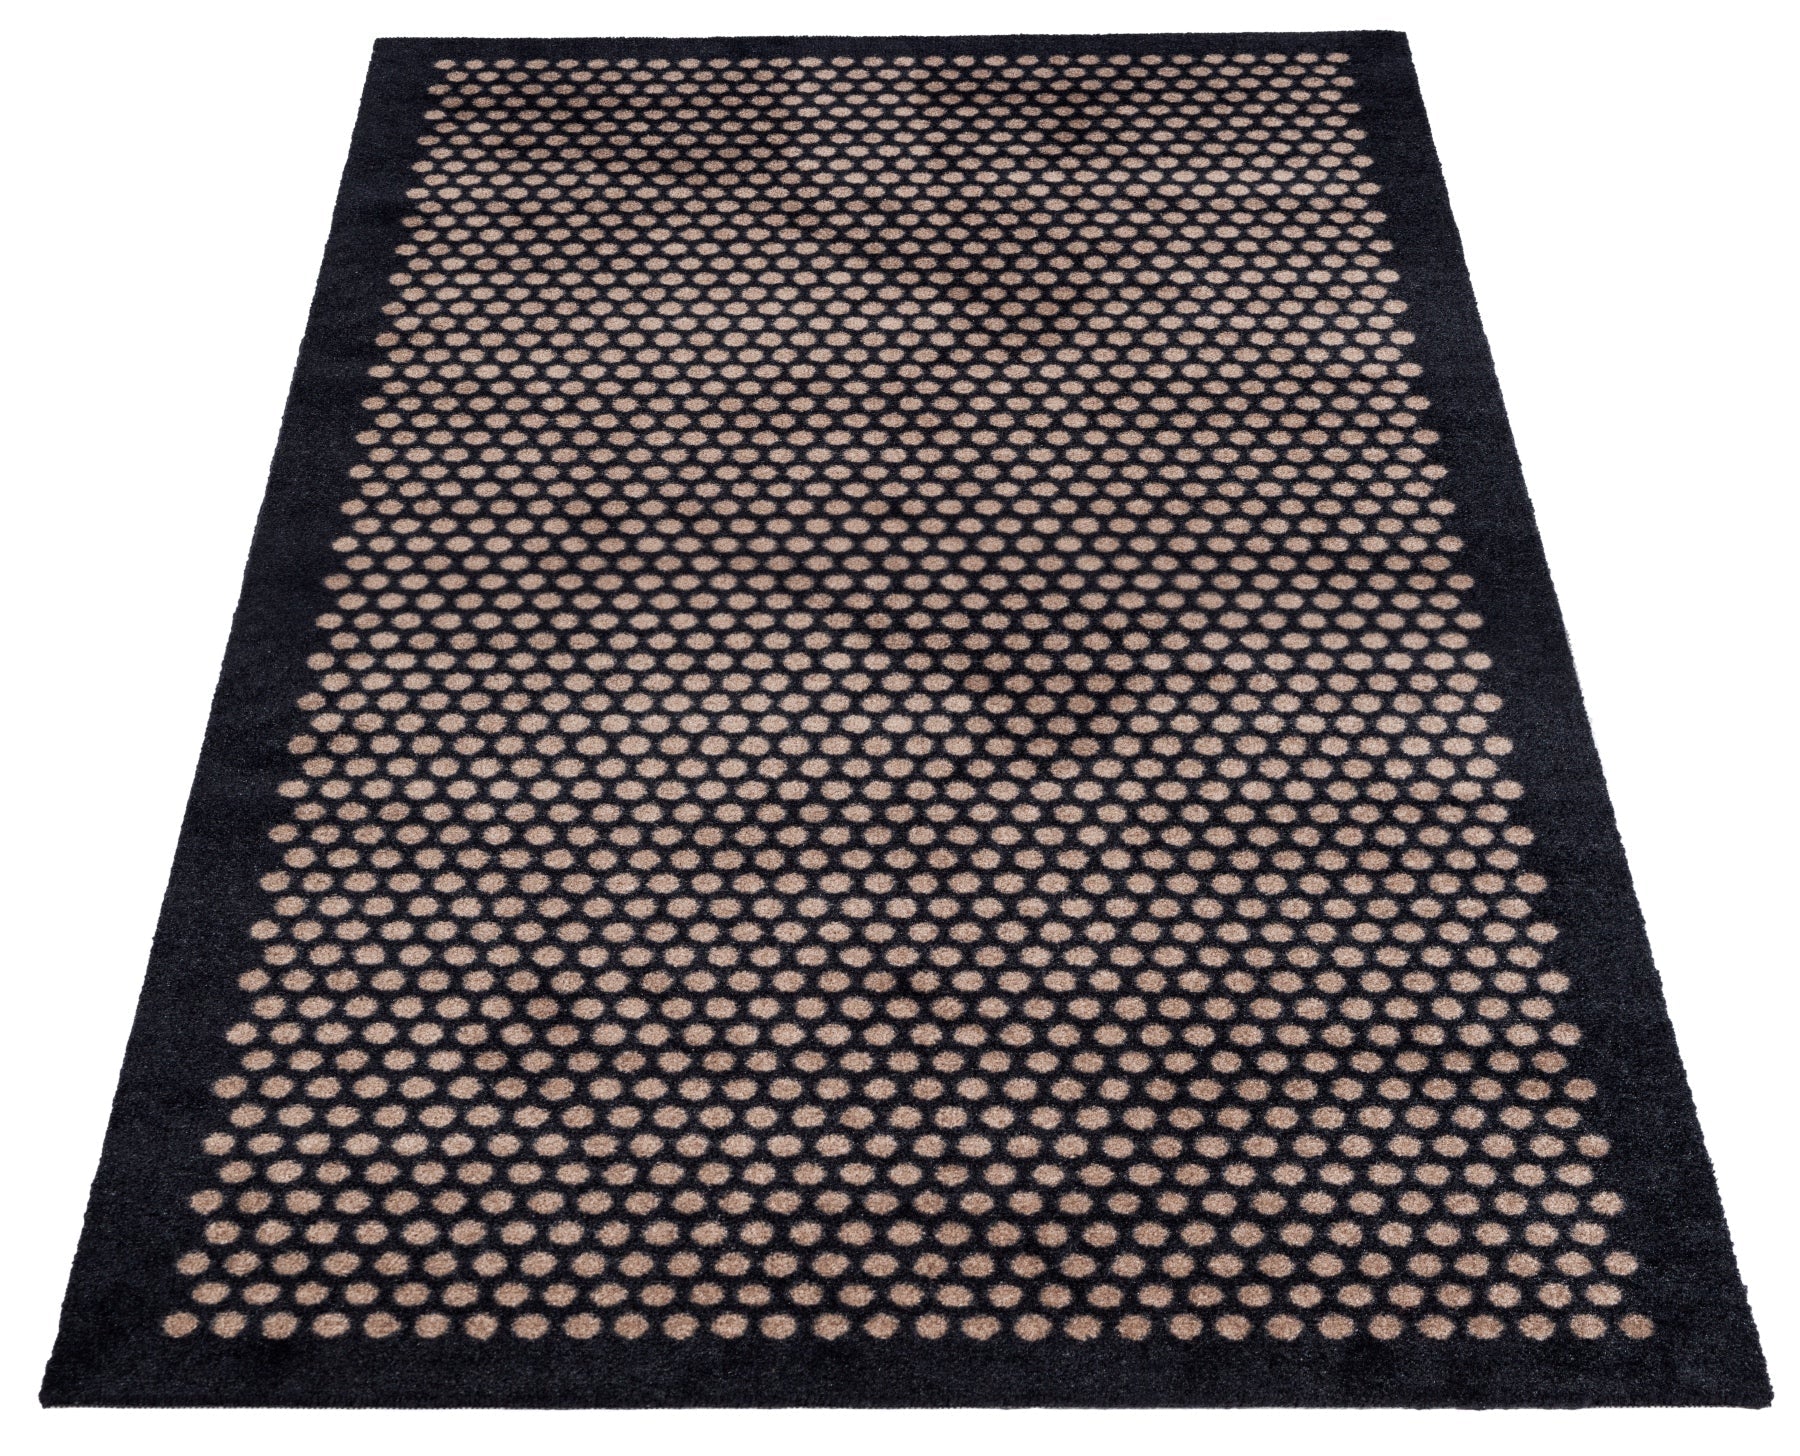 Bodenmatte 90 x 200 cm - Punkte/schwarzer Sand